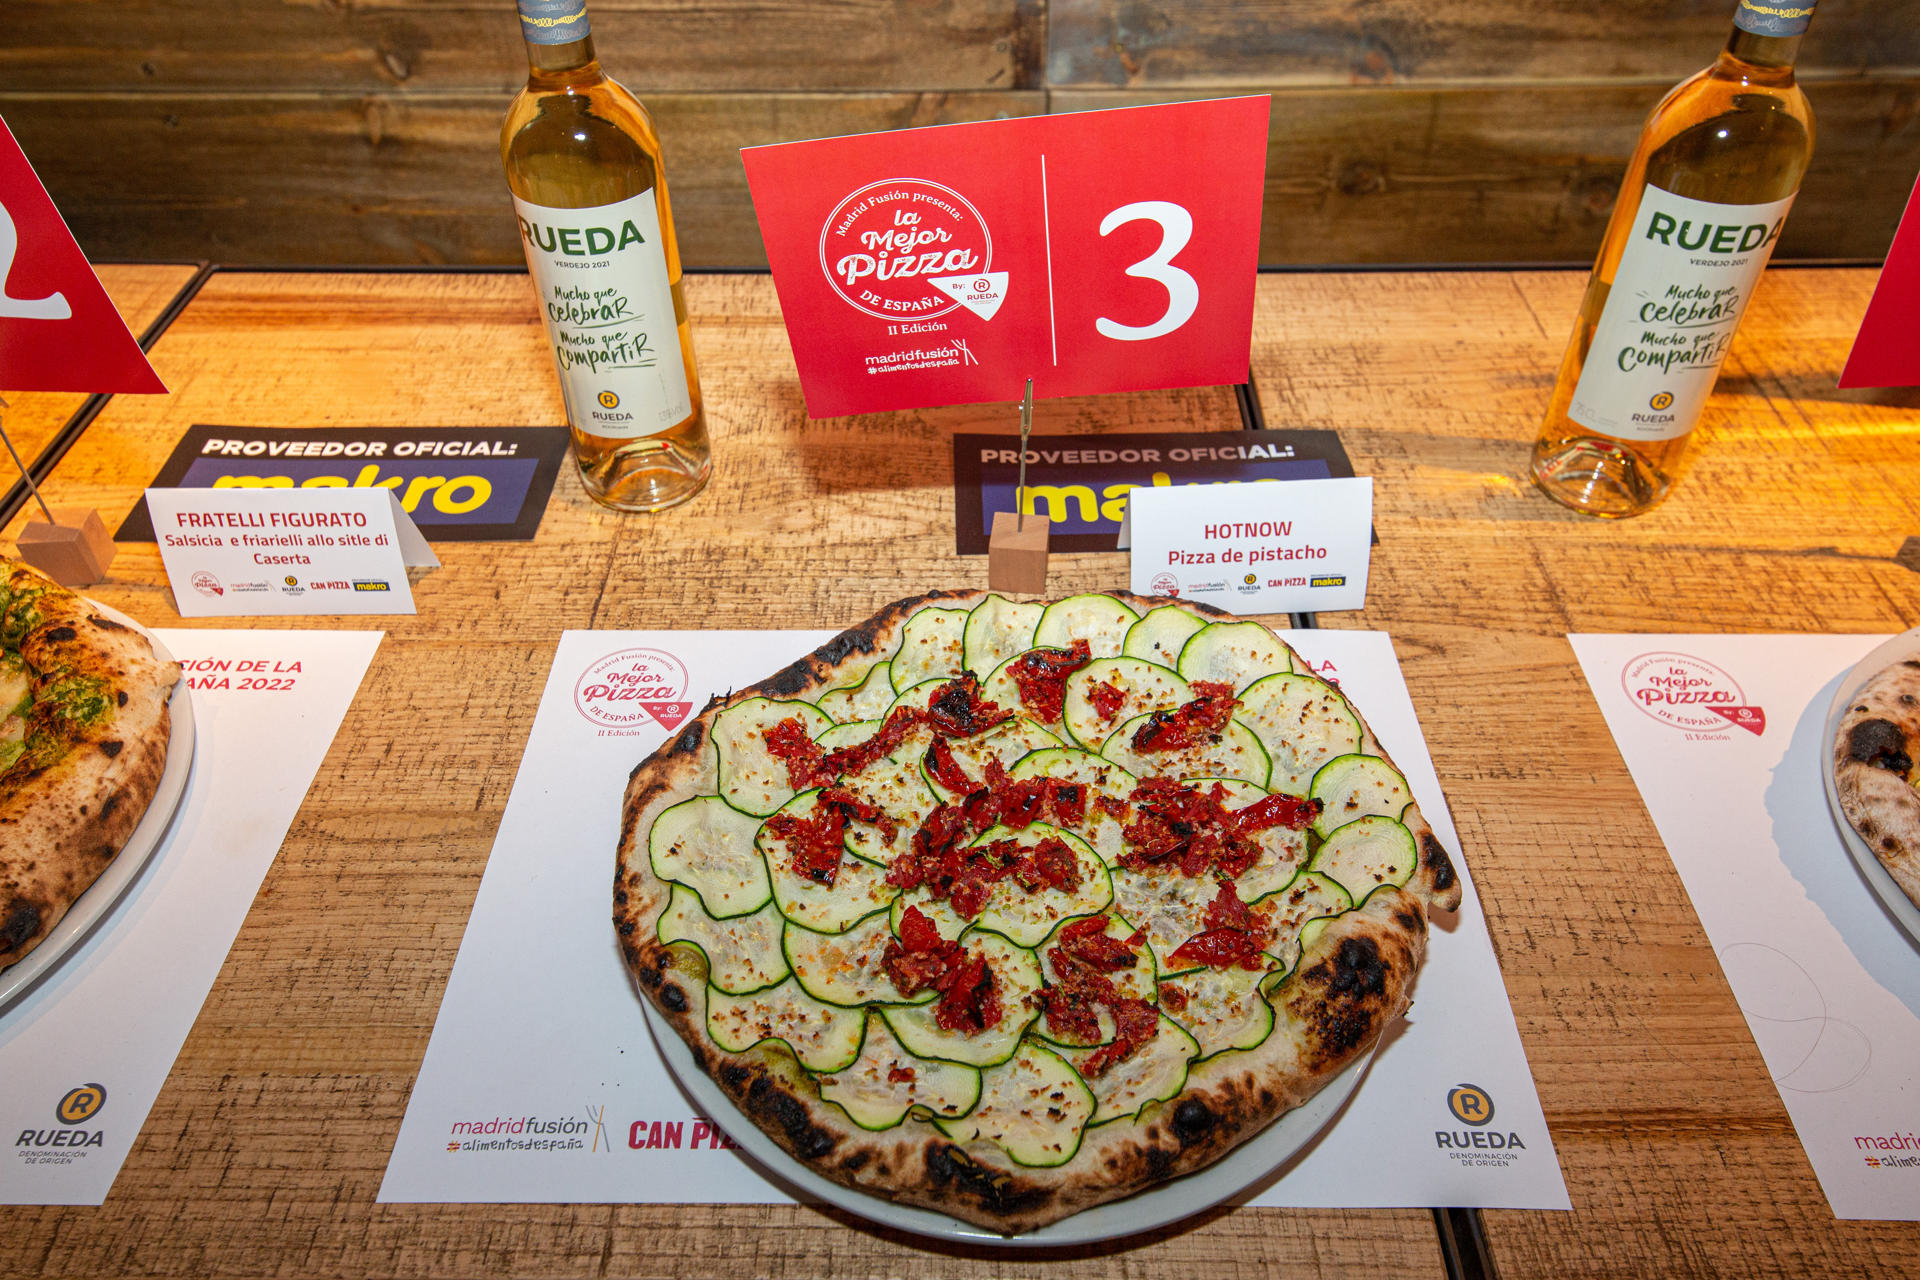 La pizza vegana con crema de pistacho, calabacín, tomate confitado, panko y ralladura de lima de Hot Now (Madrid) ha sido elegida como la mejor de España en una final en la que han competido ocho 'pizzaioli' seleccionados por el jurado entre las 19 propuestas presentadas. EFE/Madrid Fusión SOLO USO EDITORIAL/SOLO DISPONIBLE PARA ILUSTRAR LA NOTICIA QUE ACOMPAÑA (CRÉDITO OBLIGATORIO)